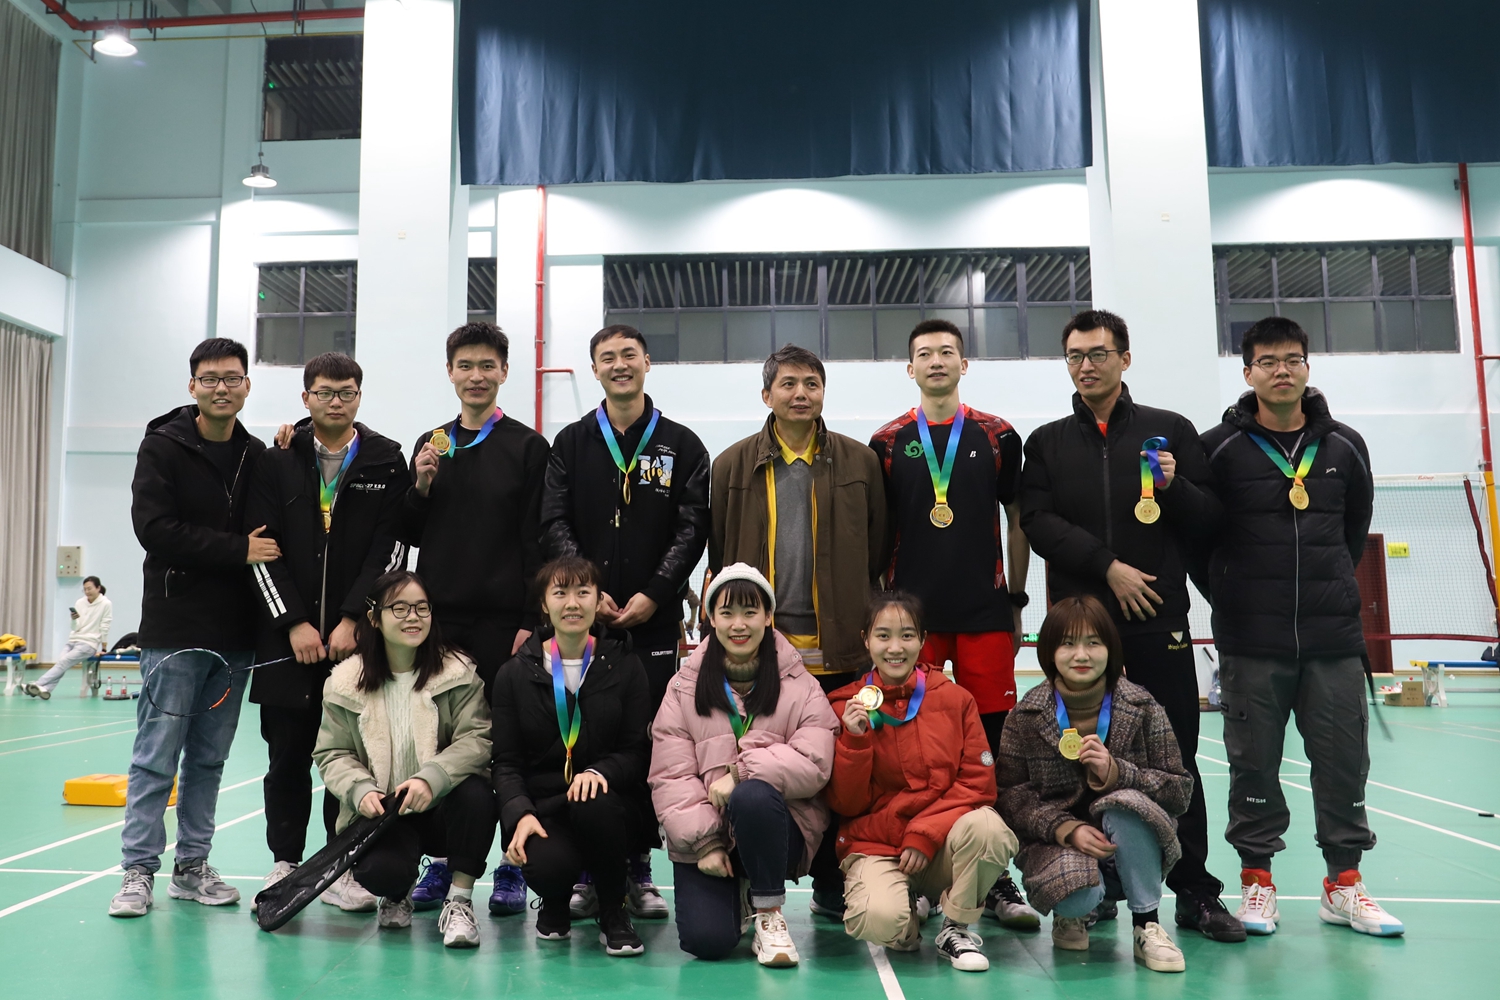 黄巧云老师与学生团队获得学院2020年羽毛球赛冠军